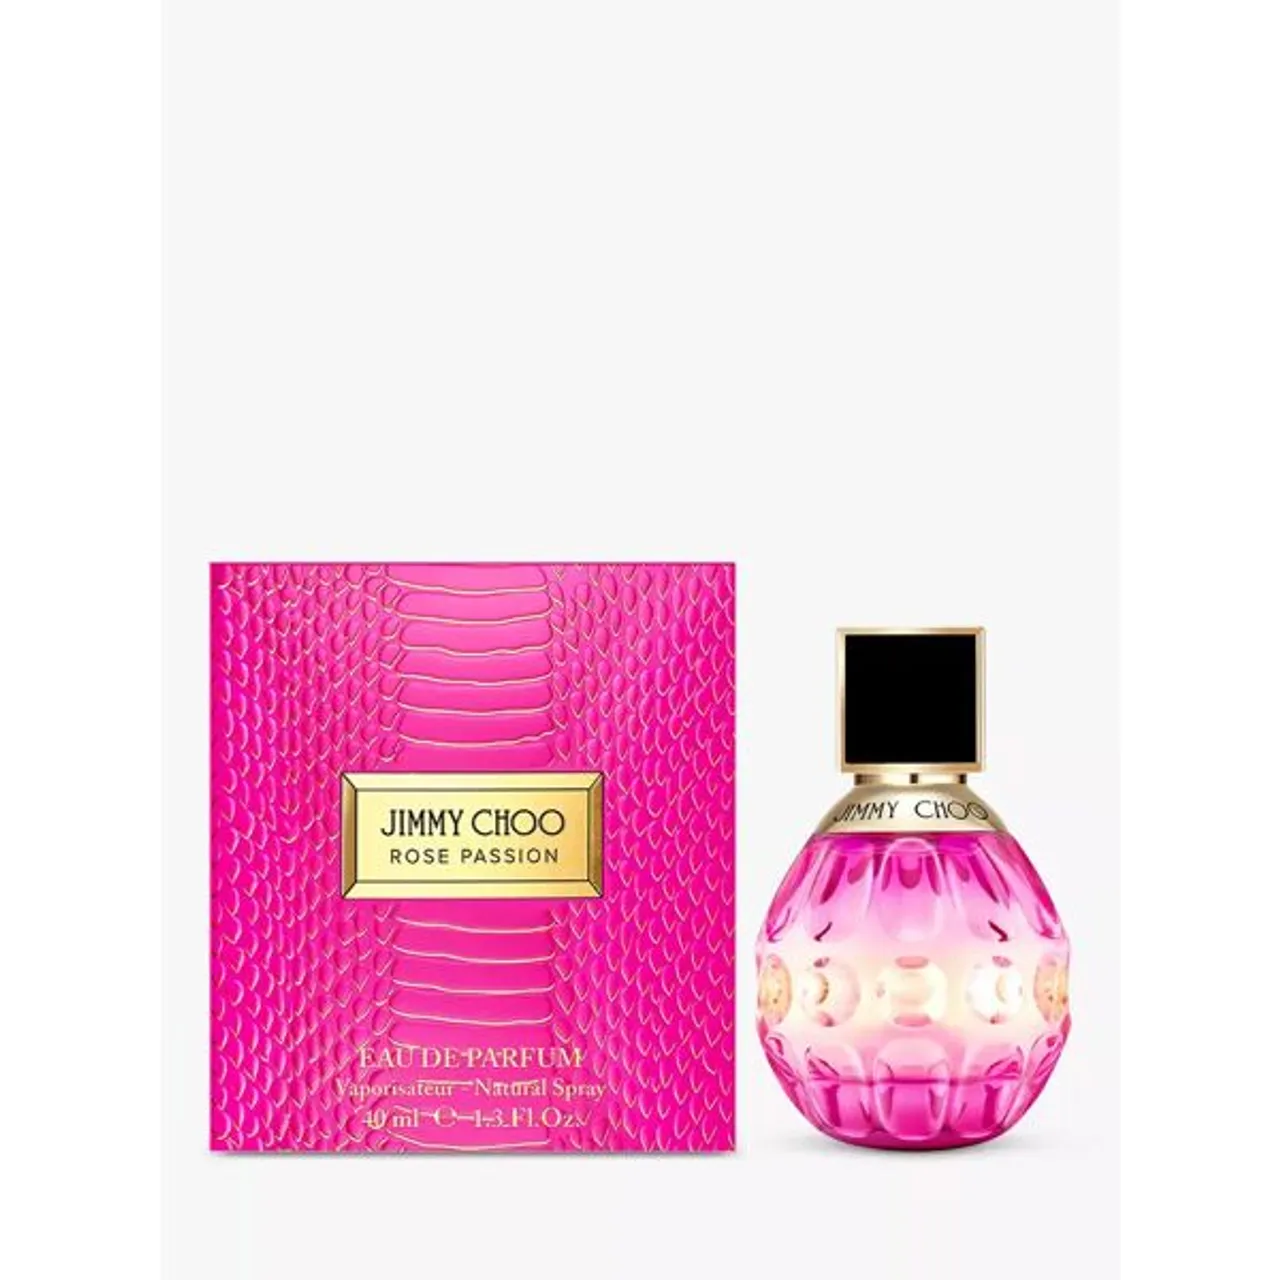 Jimmy Choo Rose Passion Eau de Parfum - Female - Size: 40ml